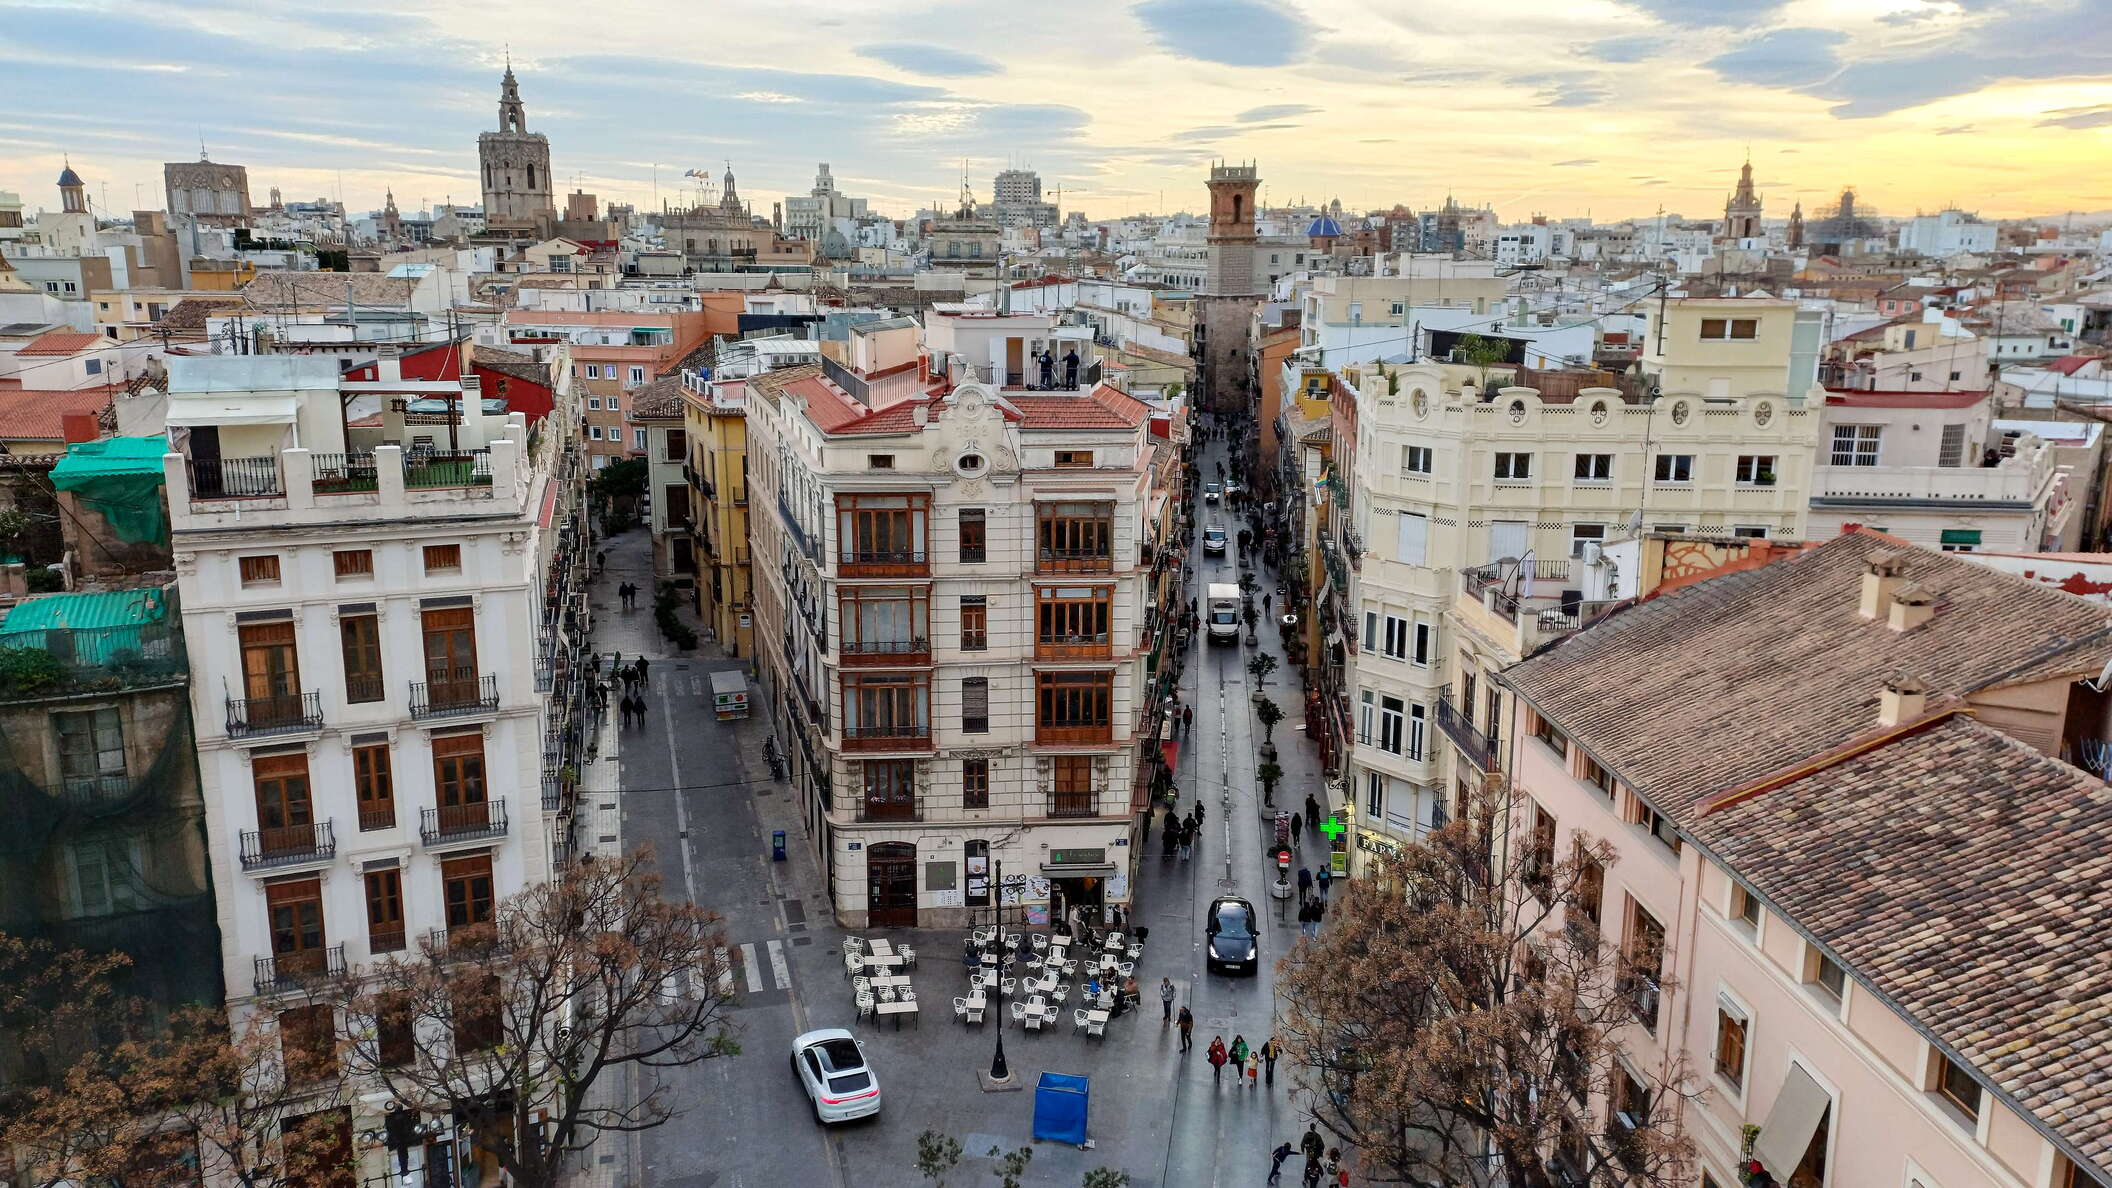 València | Ciutat Vella with Plaça dels Furs